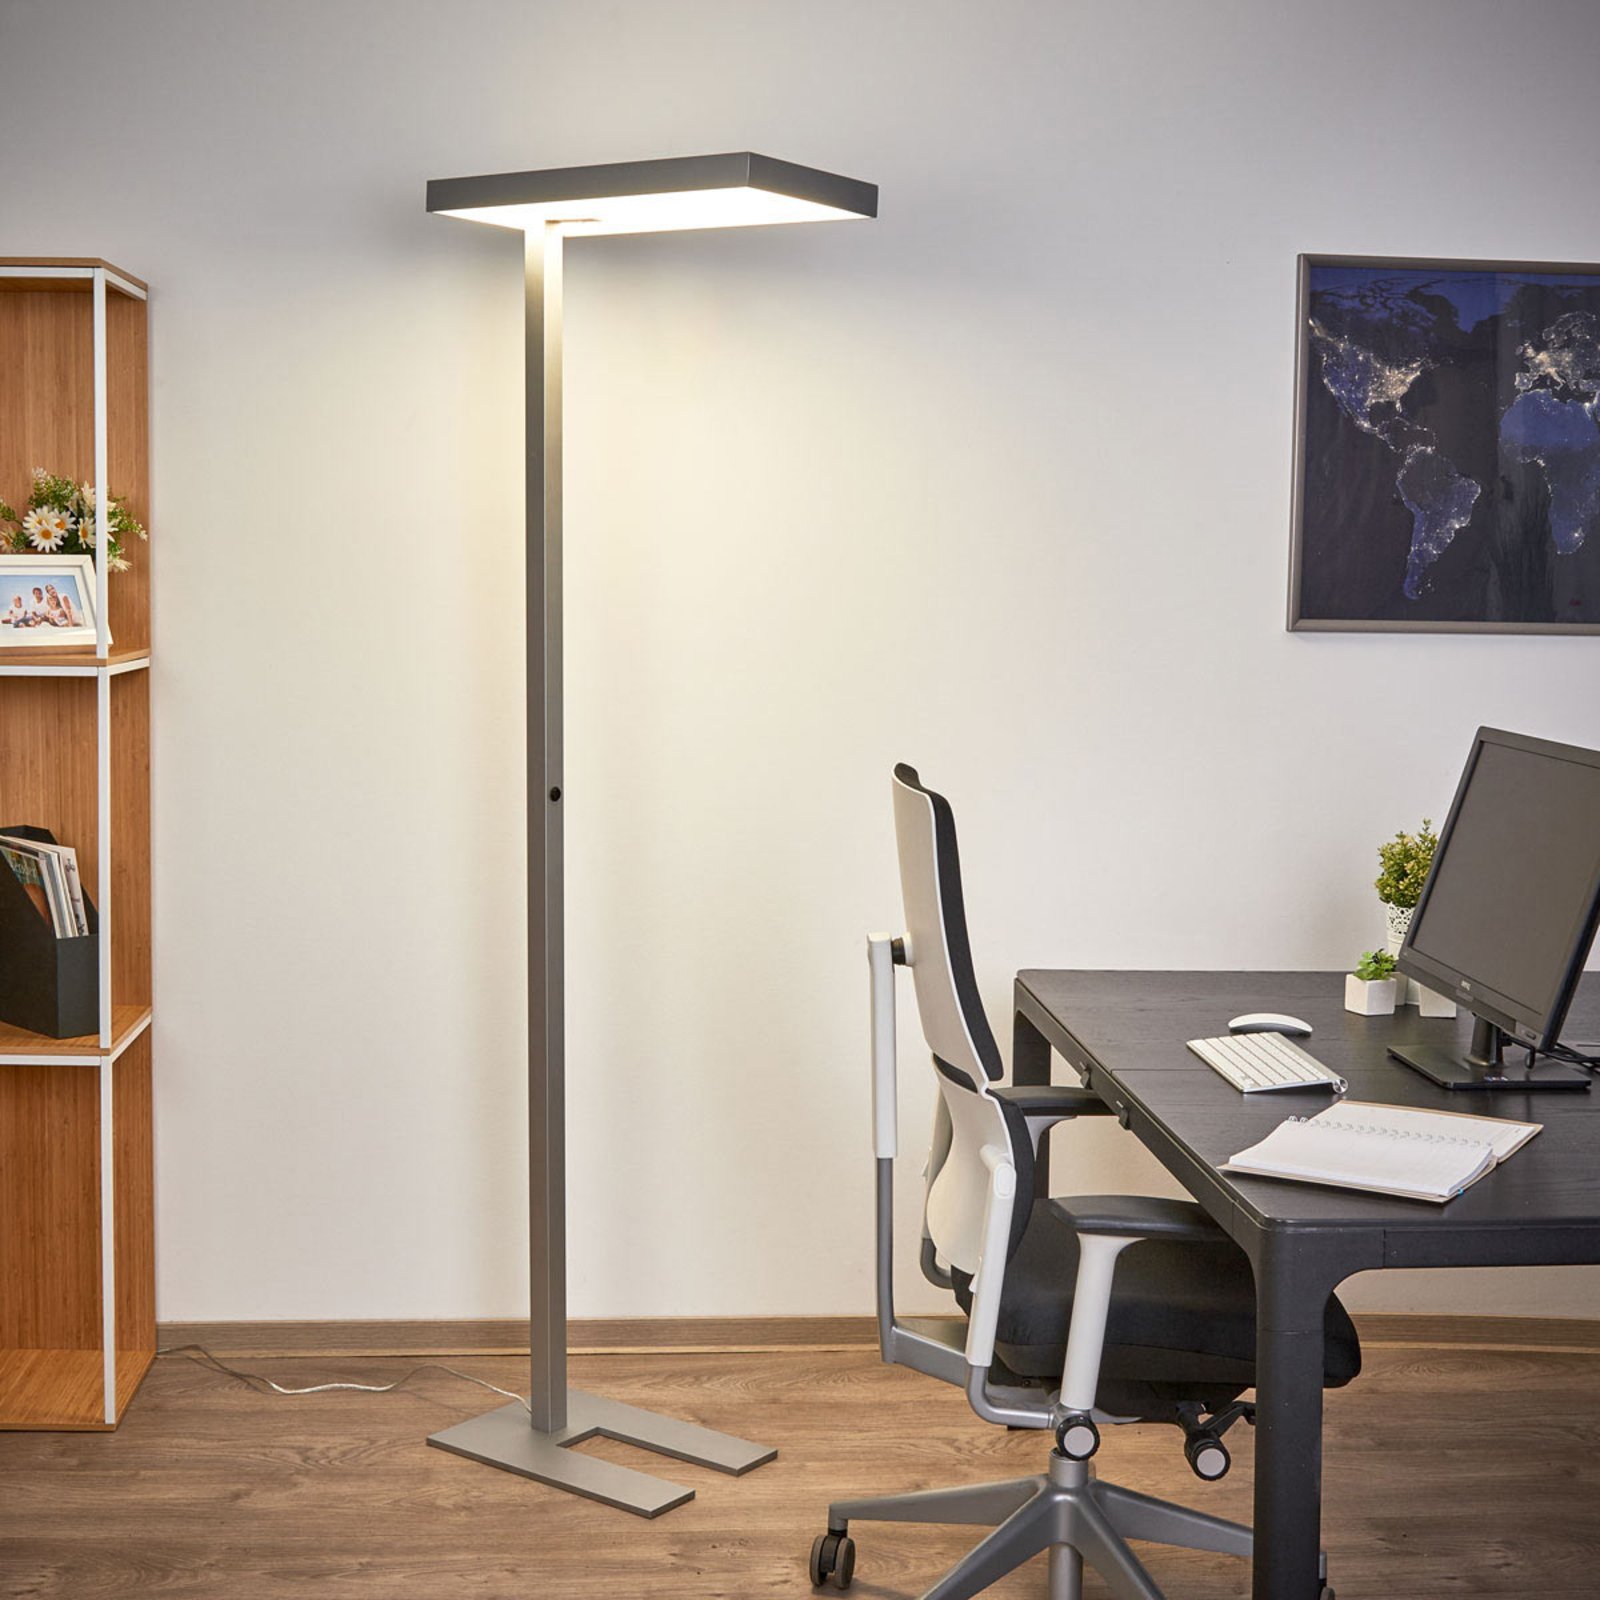 Kancelářská LED stojací lampa Nora, snímač, 50 W